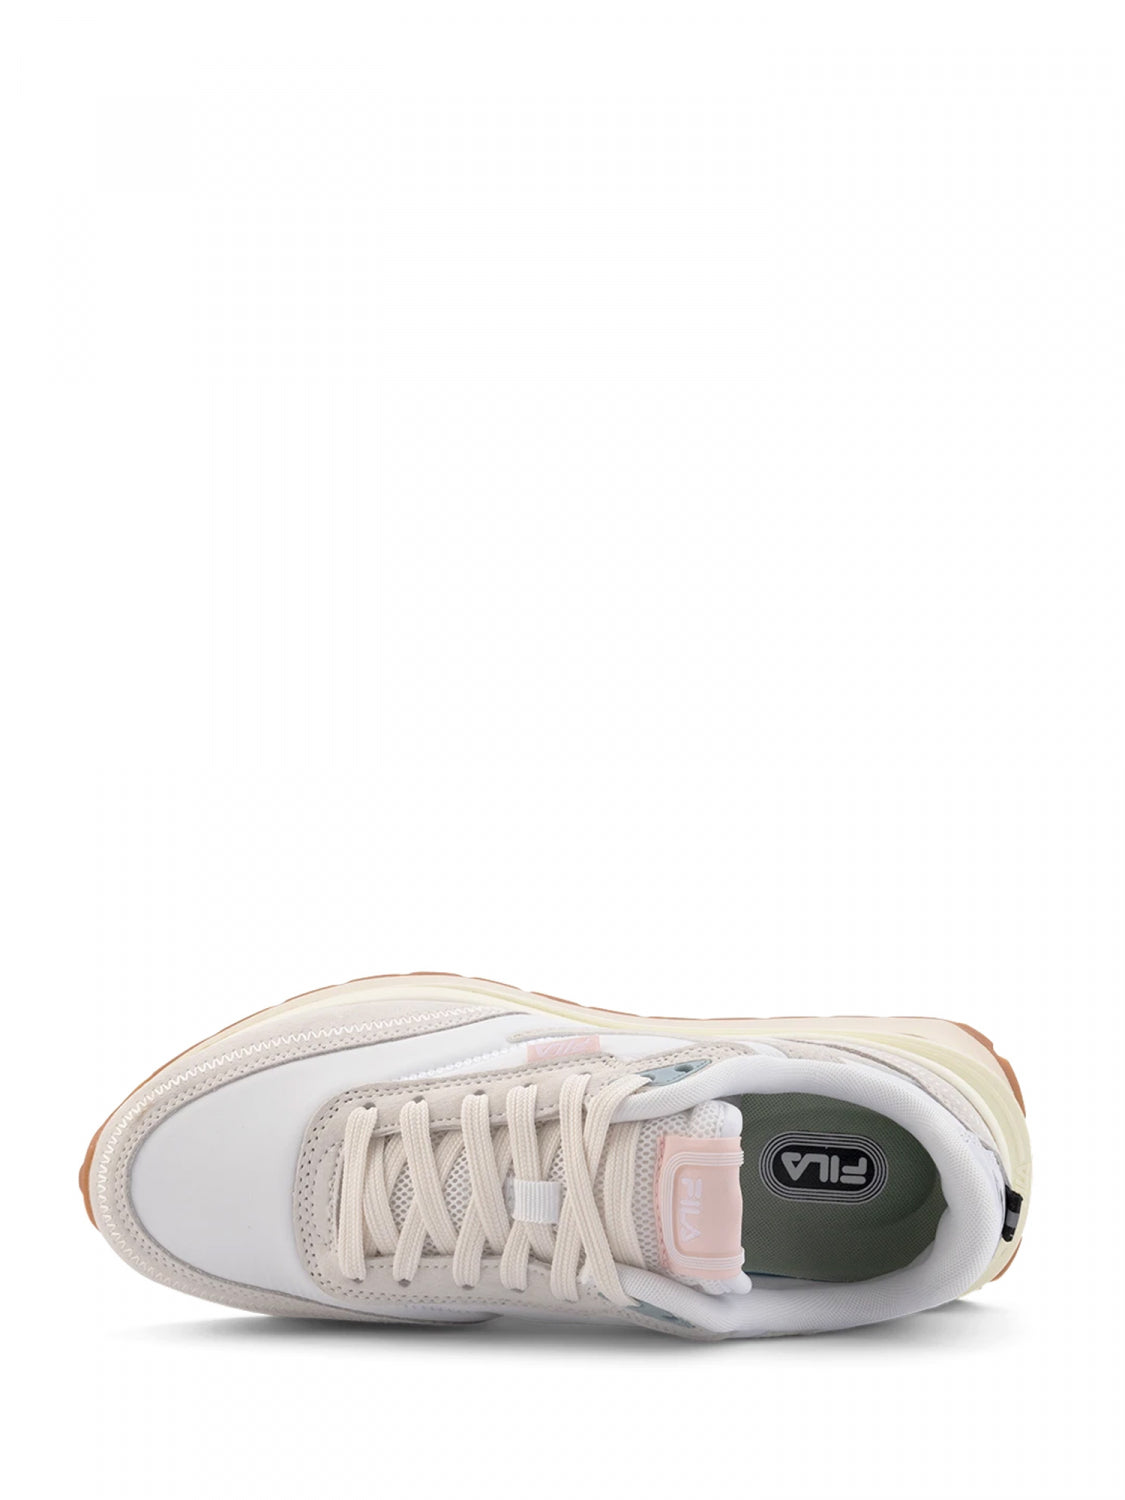 Fila sneakers da donna Reggio 212 1011392.1FG white